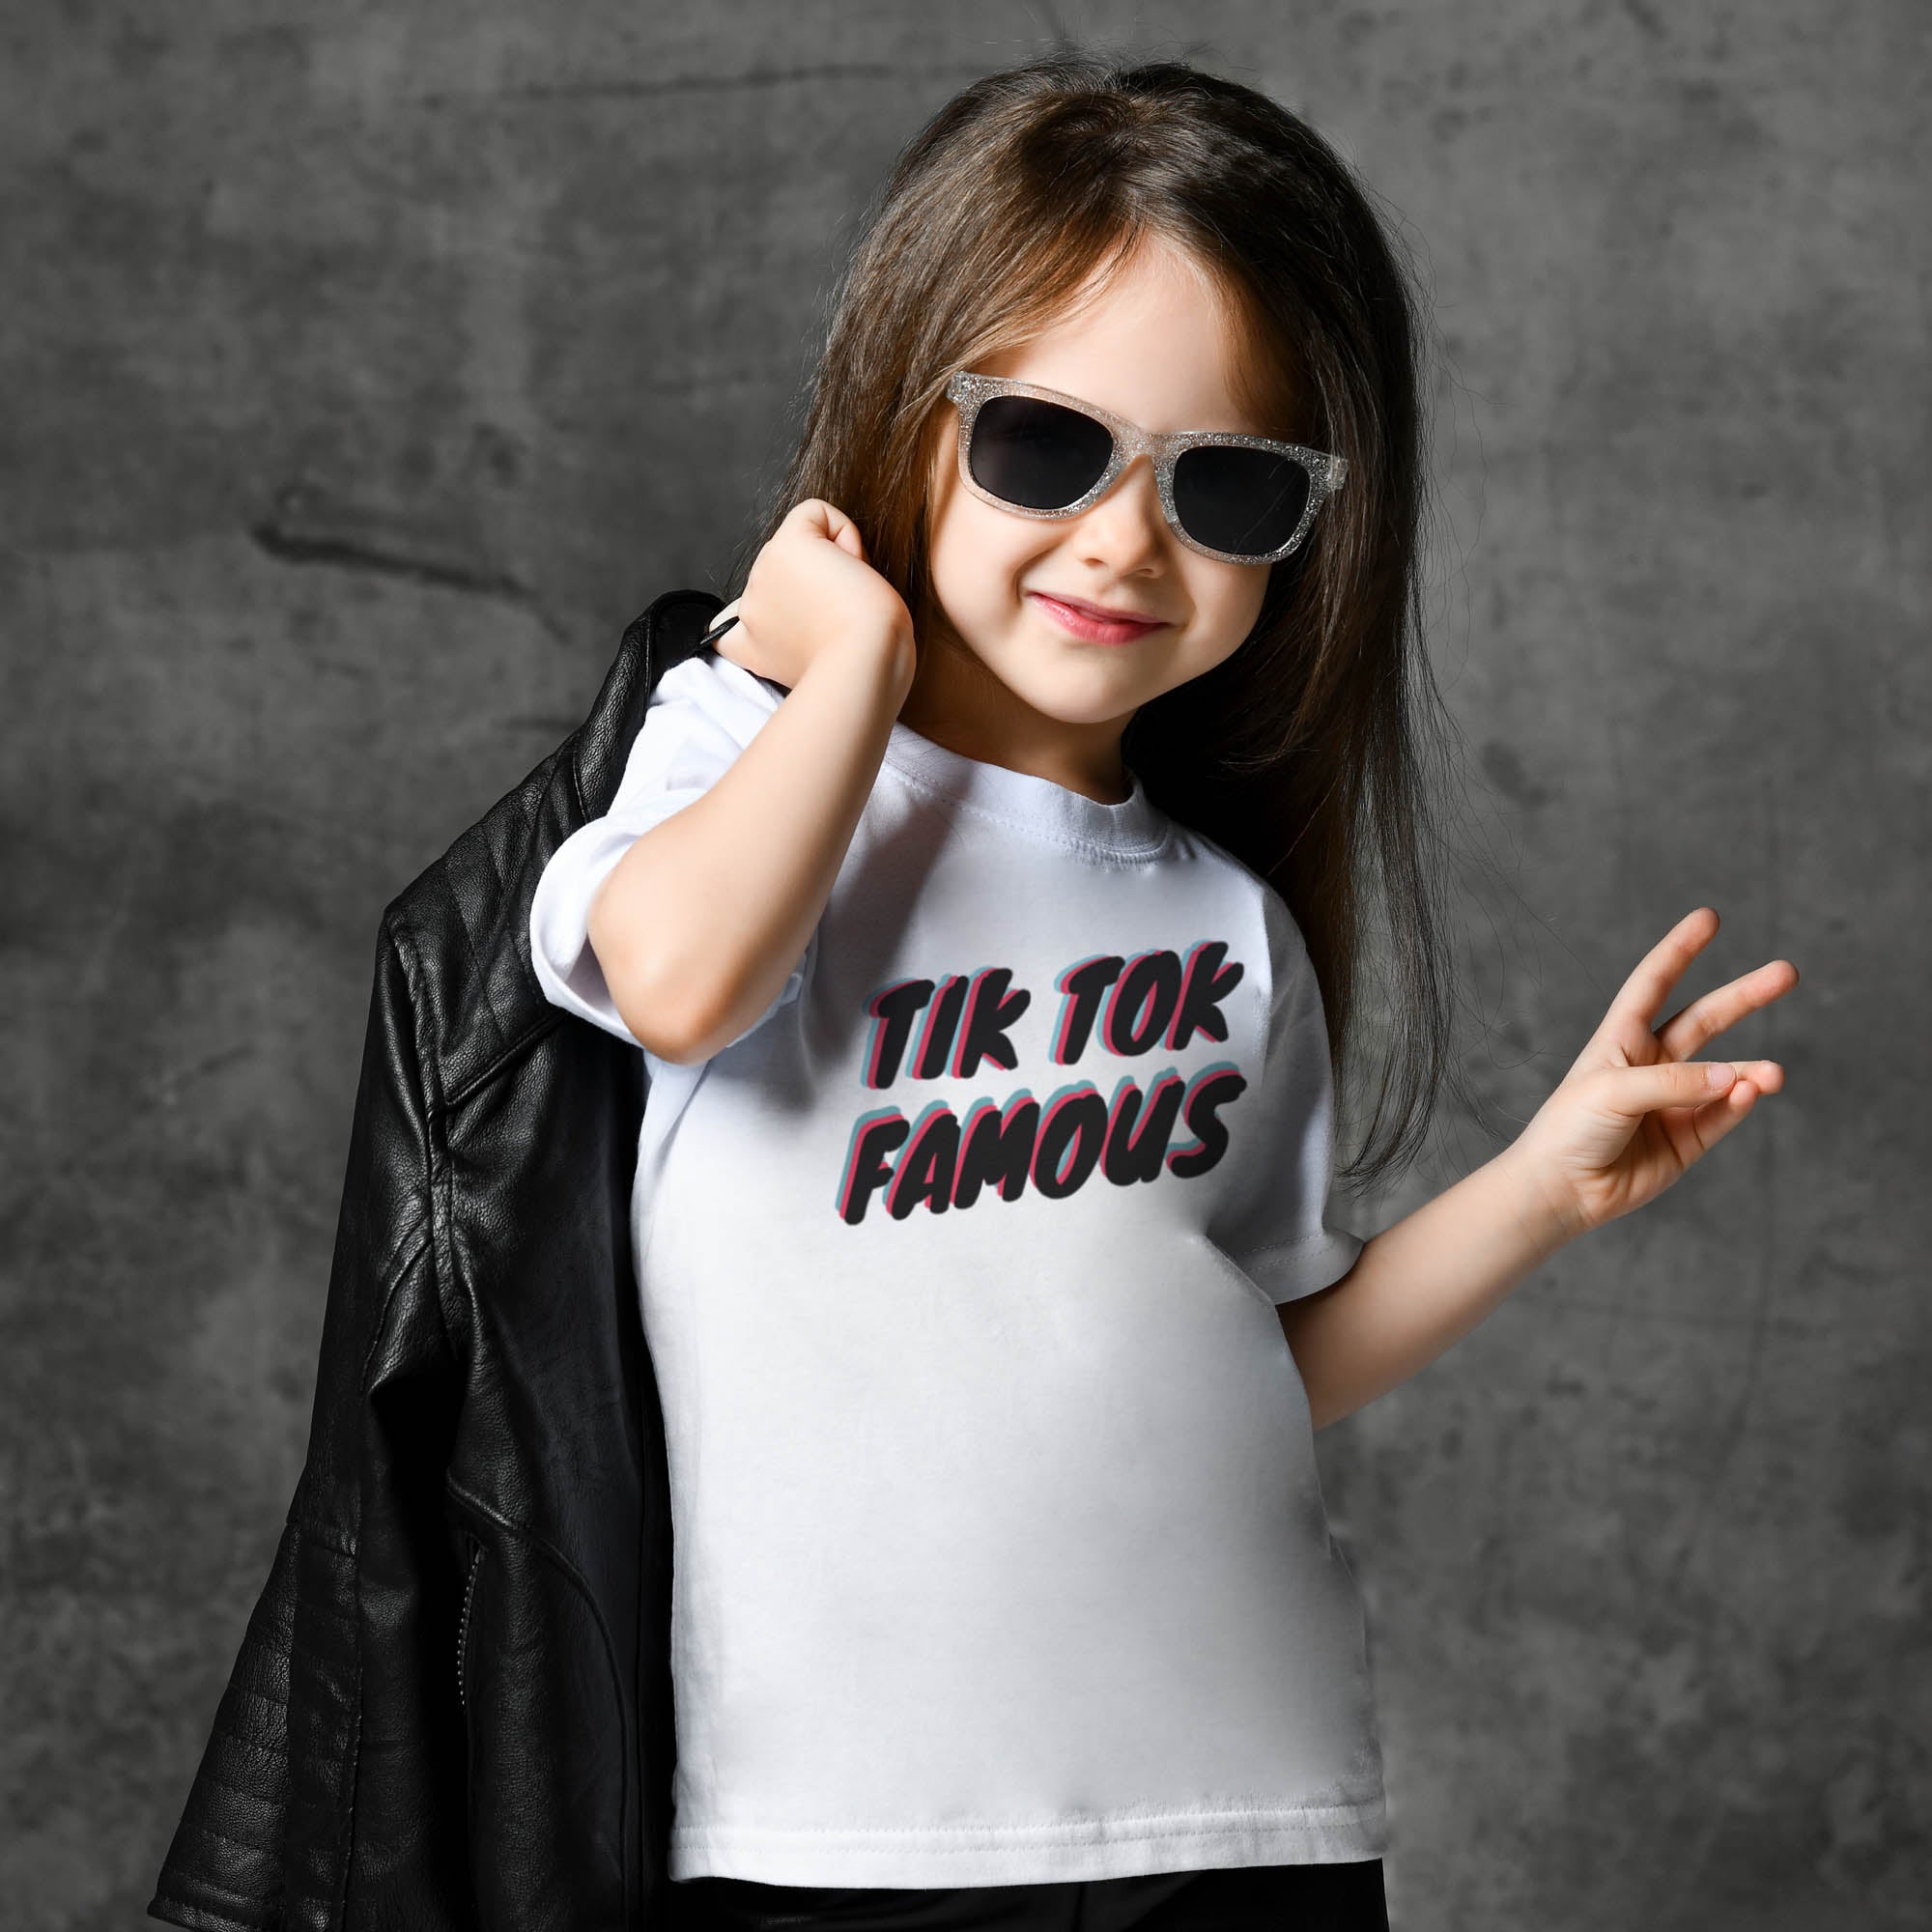 Tik Tok Famous Kids T-Shirt Design